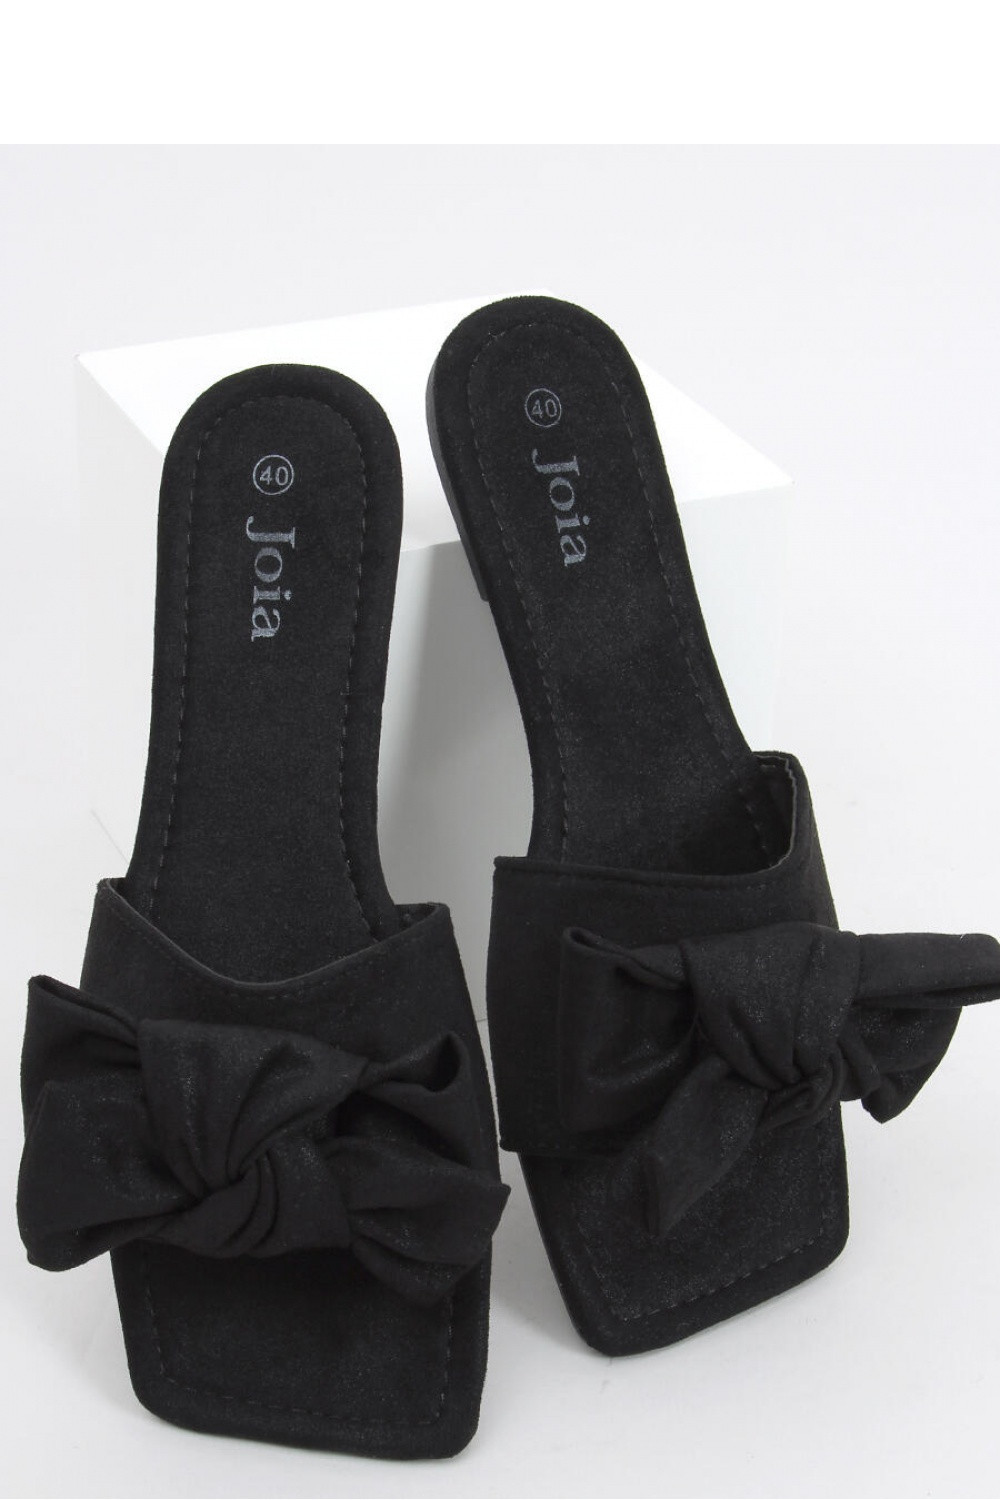 Dámské pantofle model 18409077 - Inello Velikost: 37, Barvy: černá